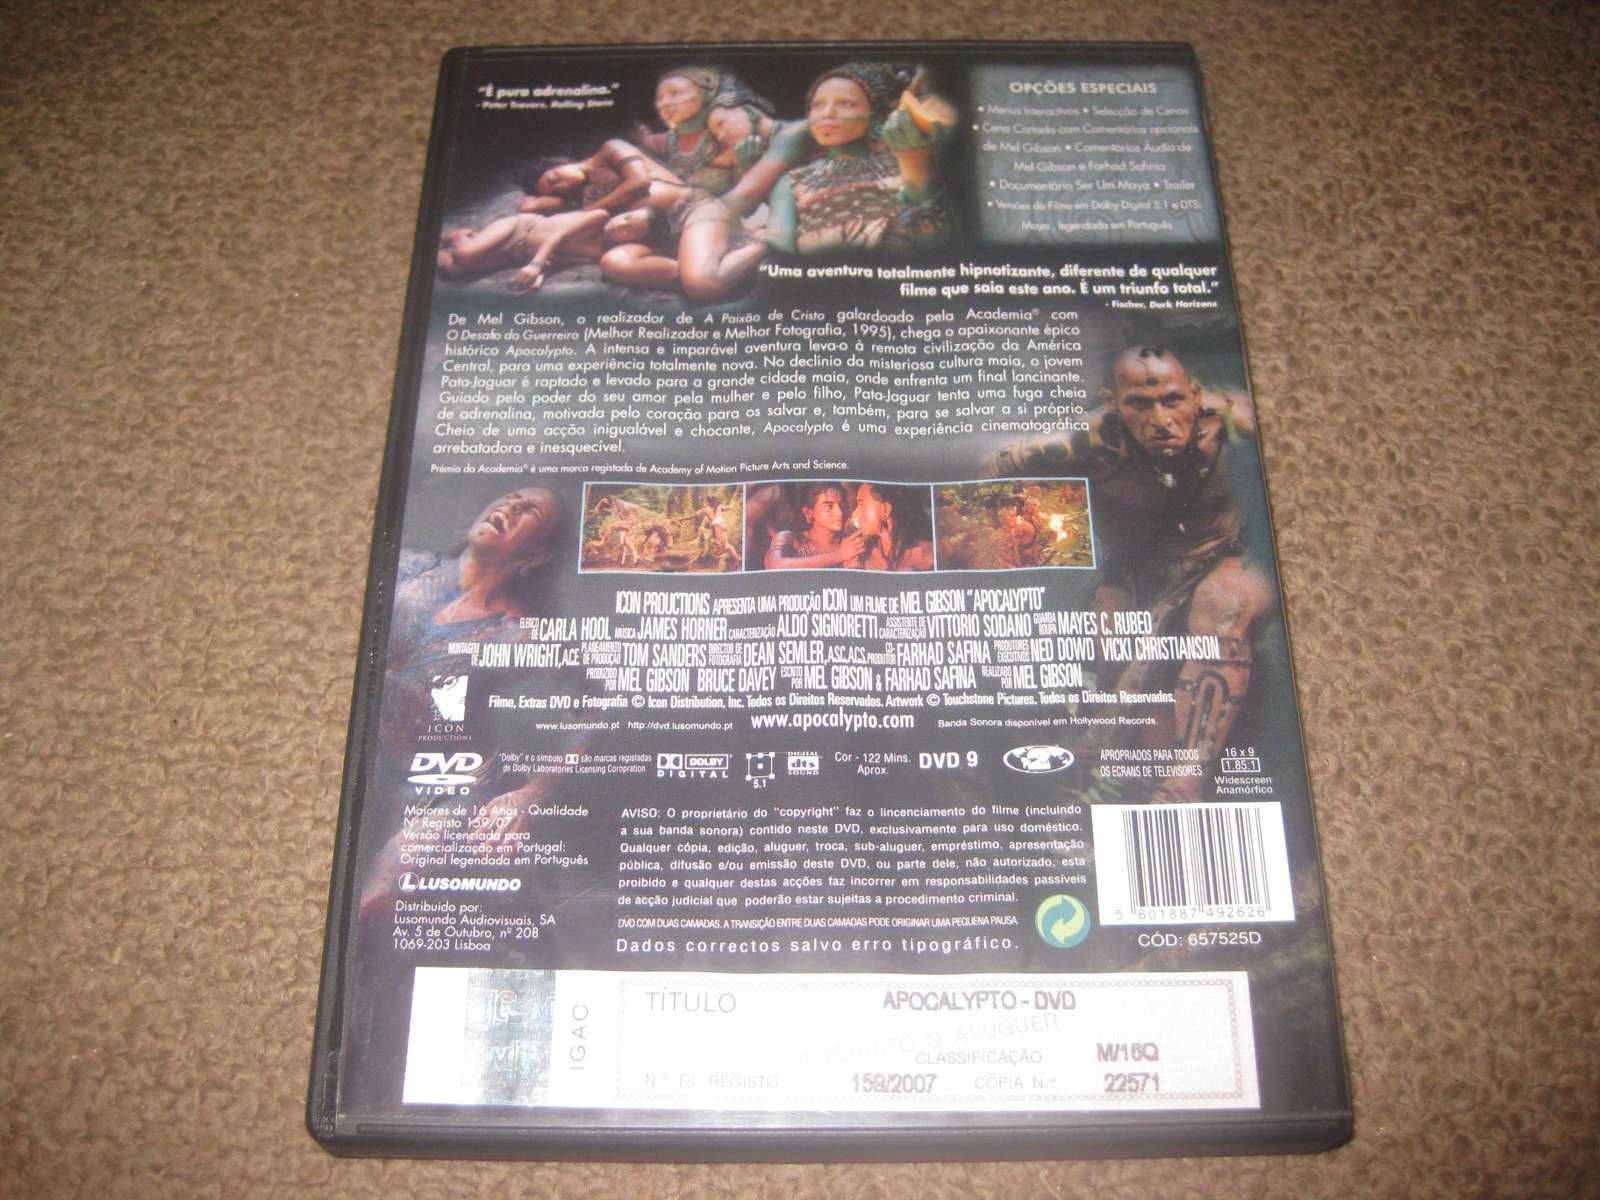 DVD "Apocalypto" de Mel Gibson